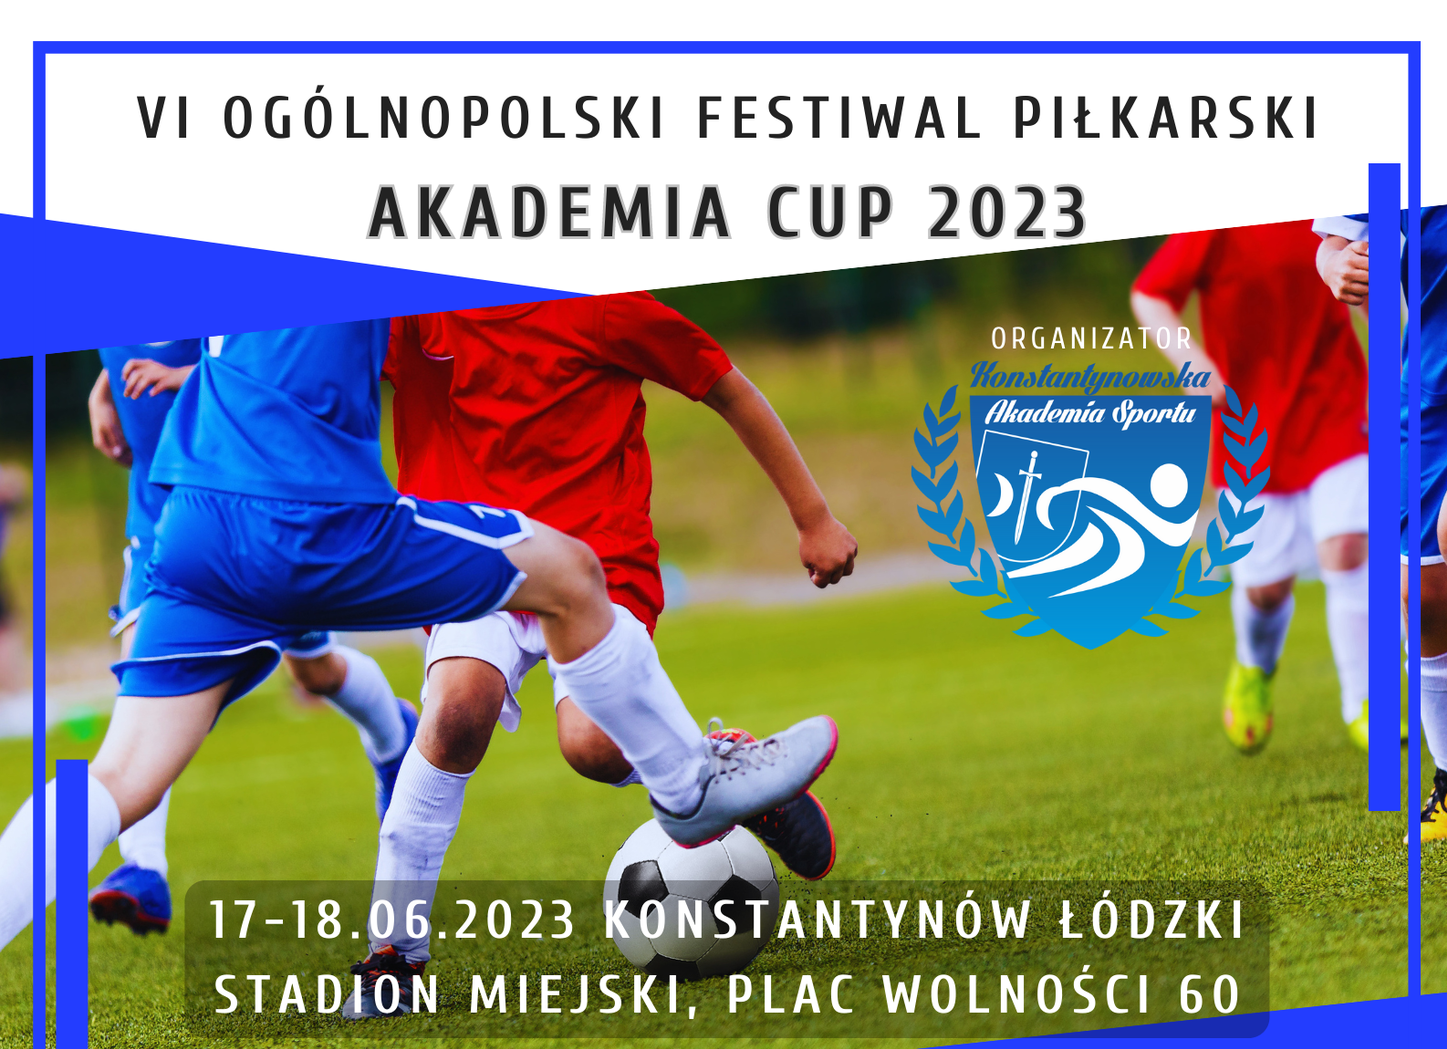 Plakat Akademia Cup 2023 2 e1686916594748